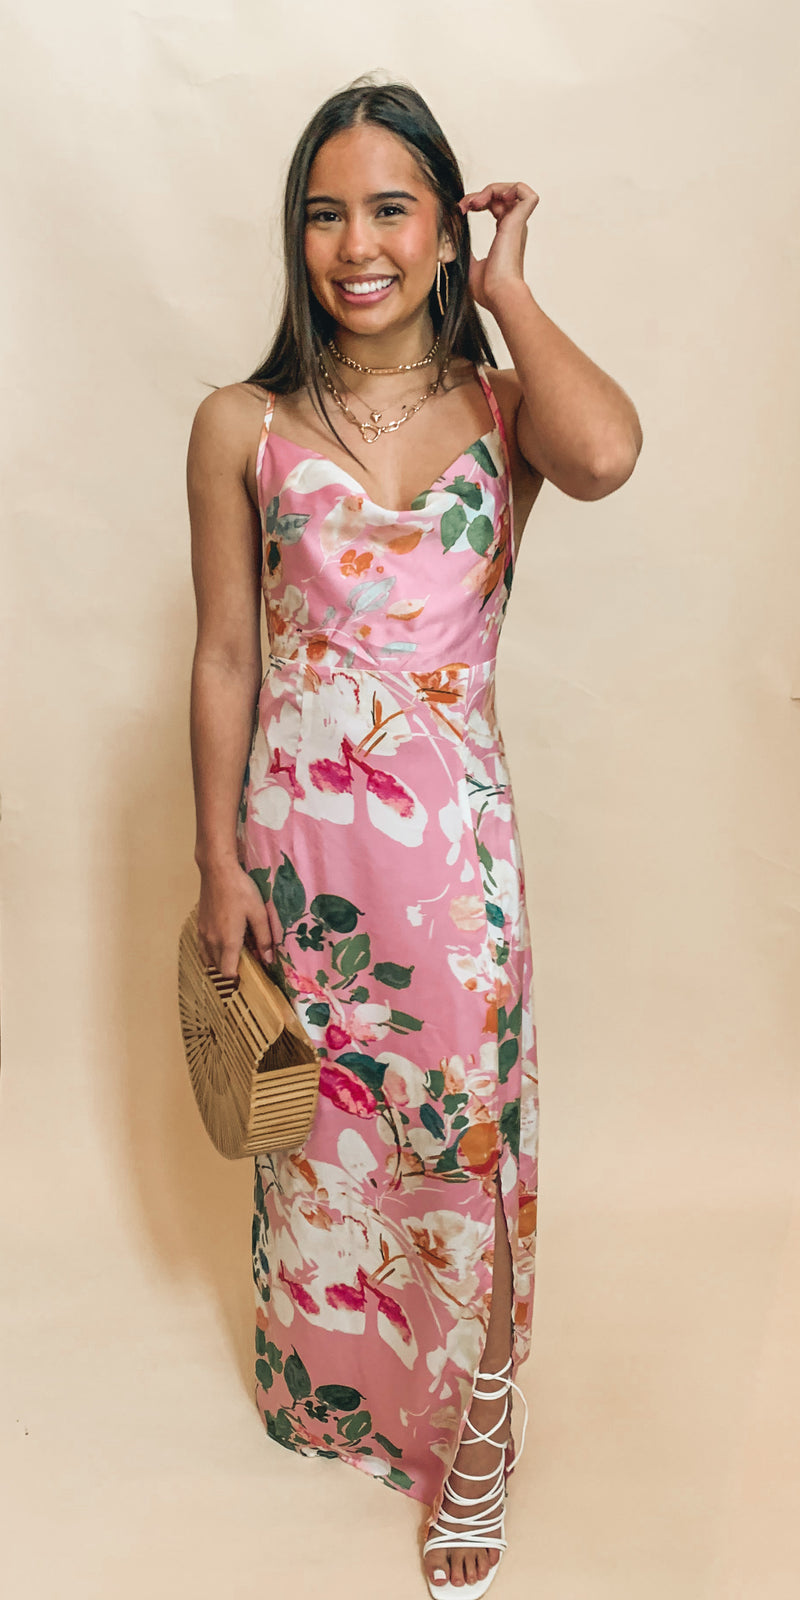 BEST SELLER! Floral side slit maxi dress